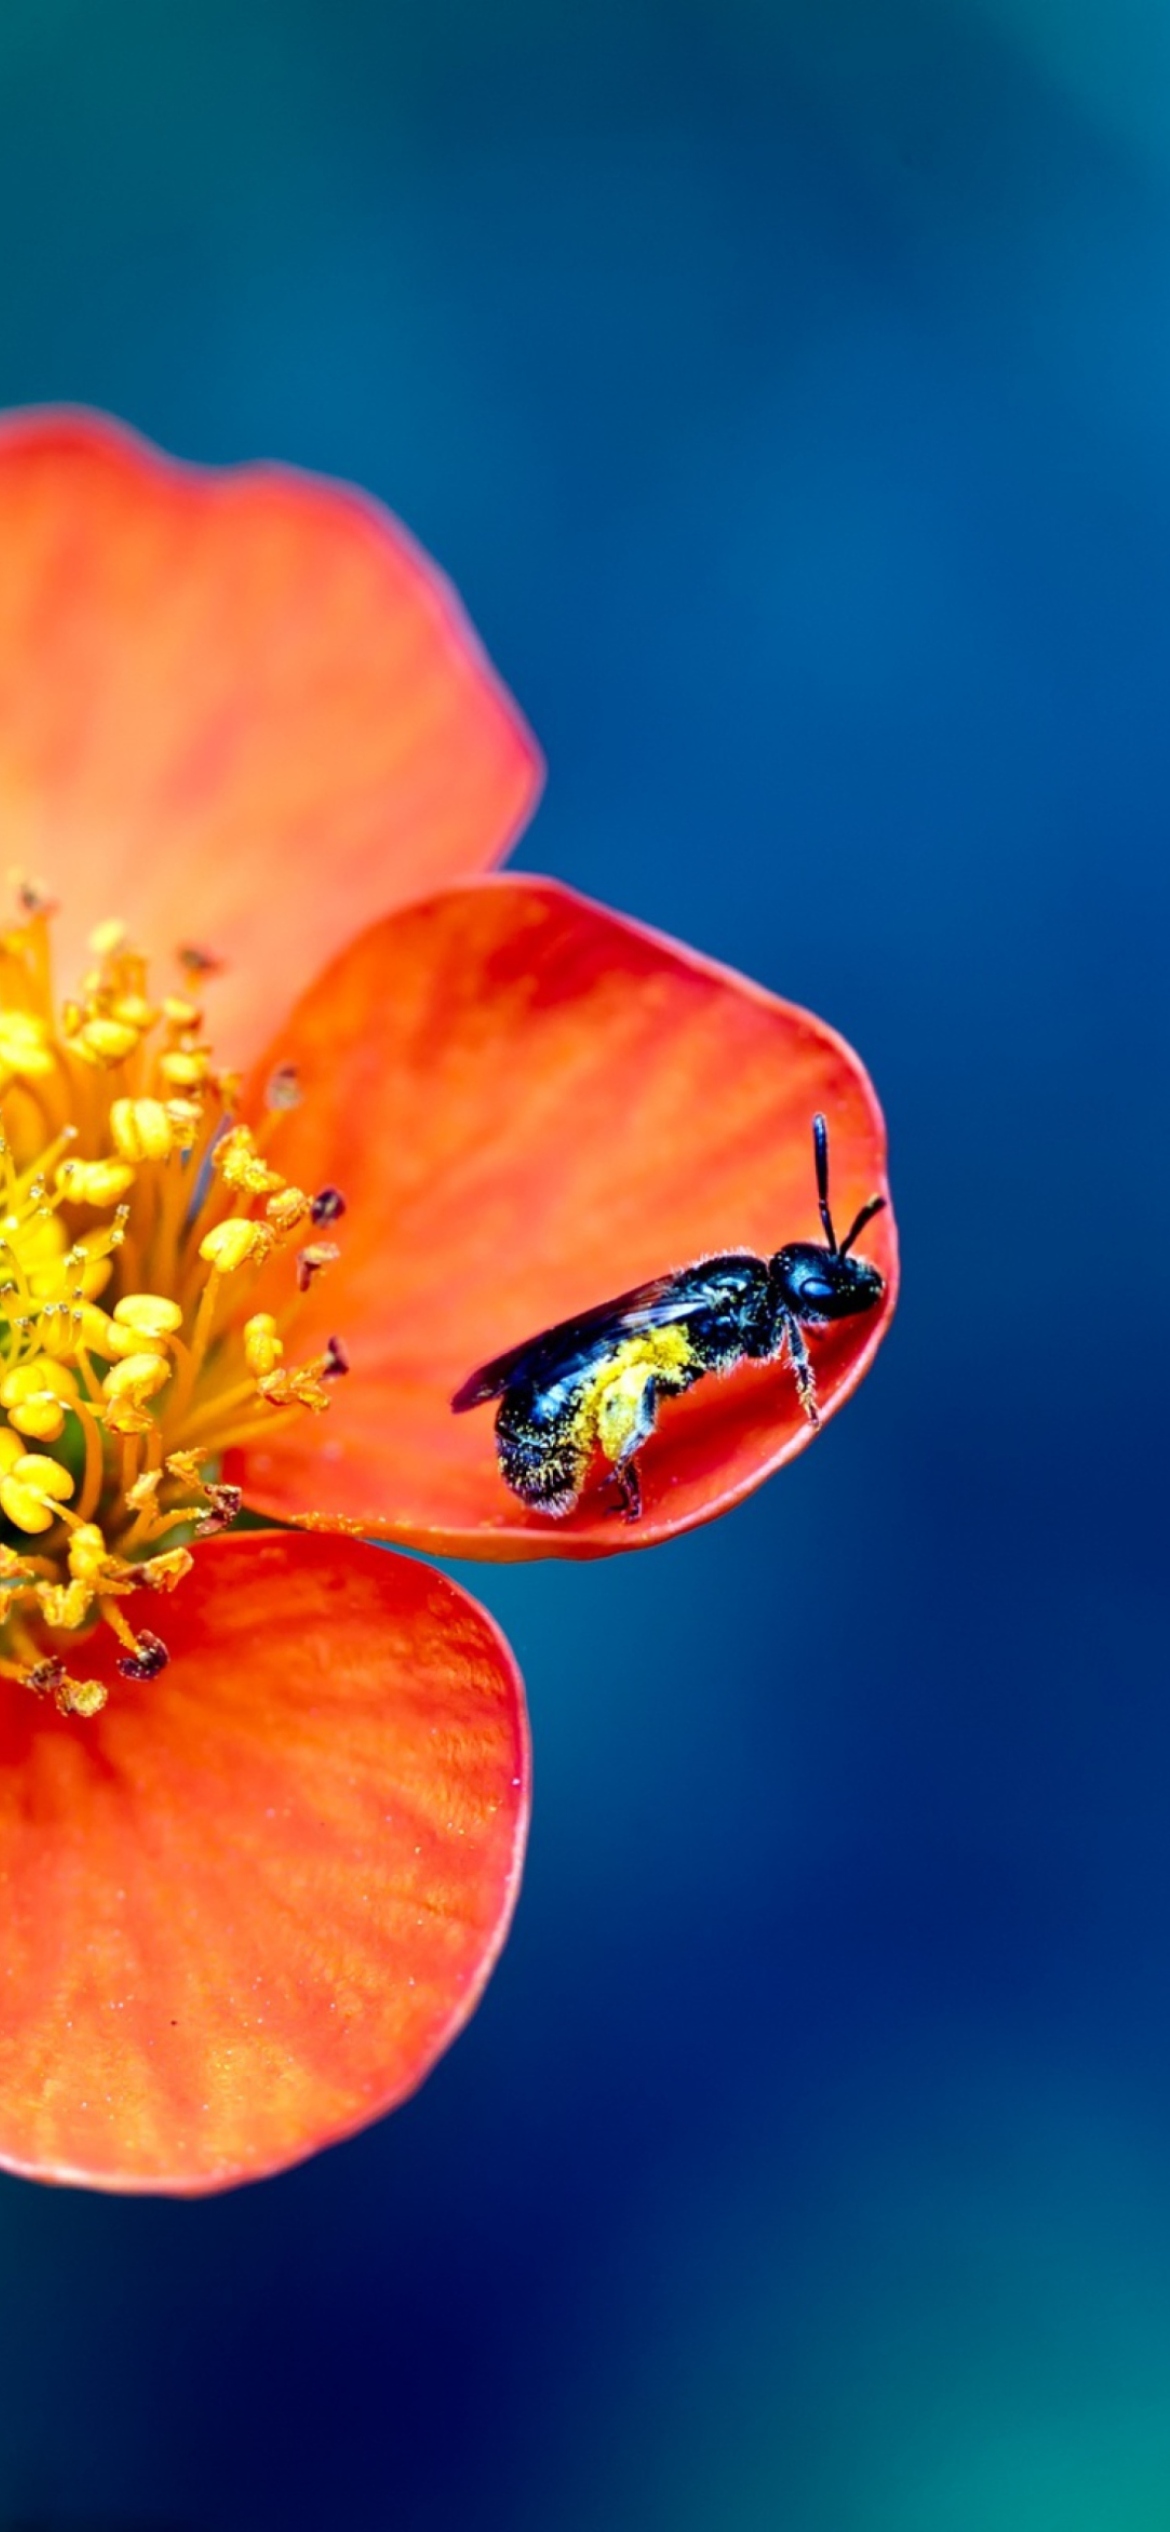 Bee On Orange Flower wallpaper 1170x2532